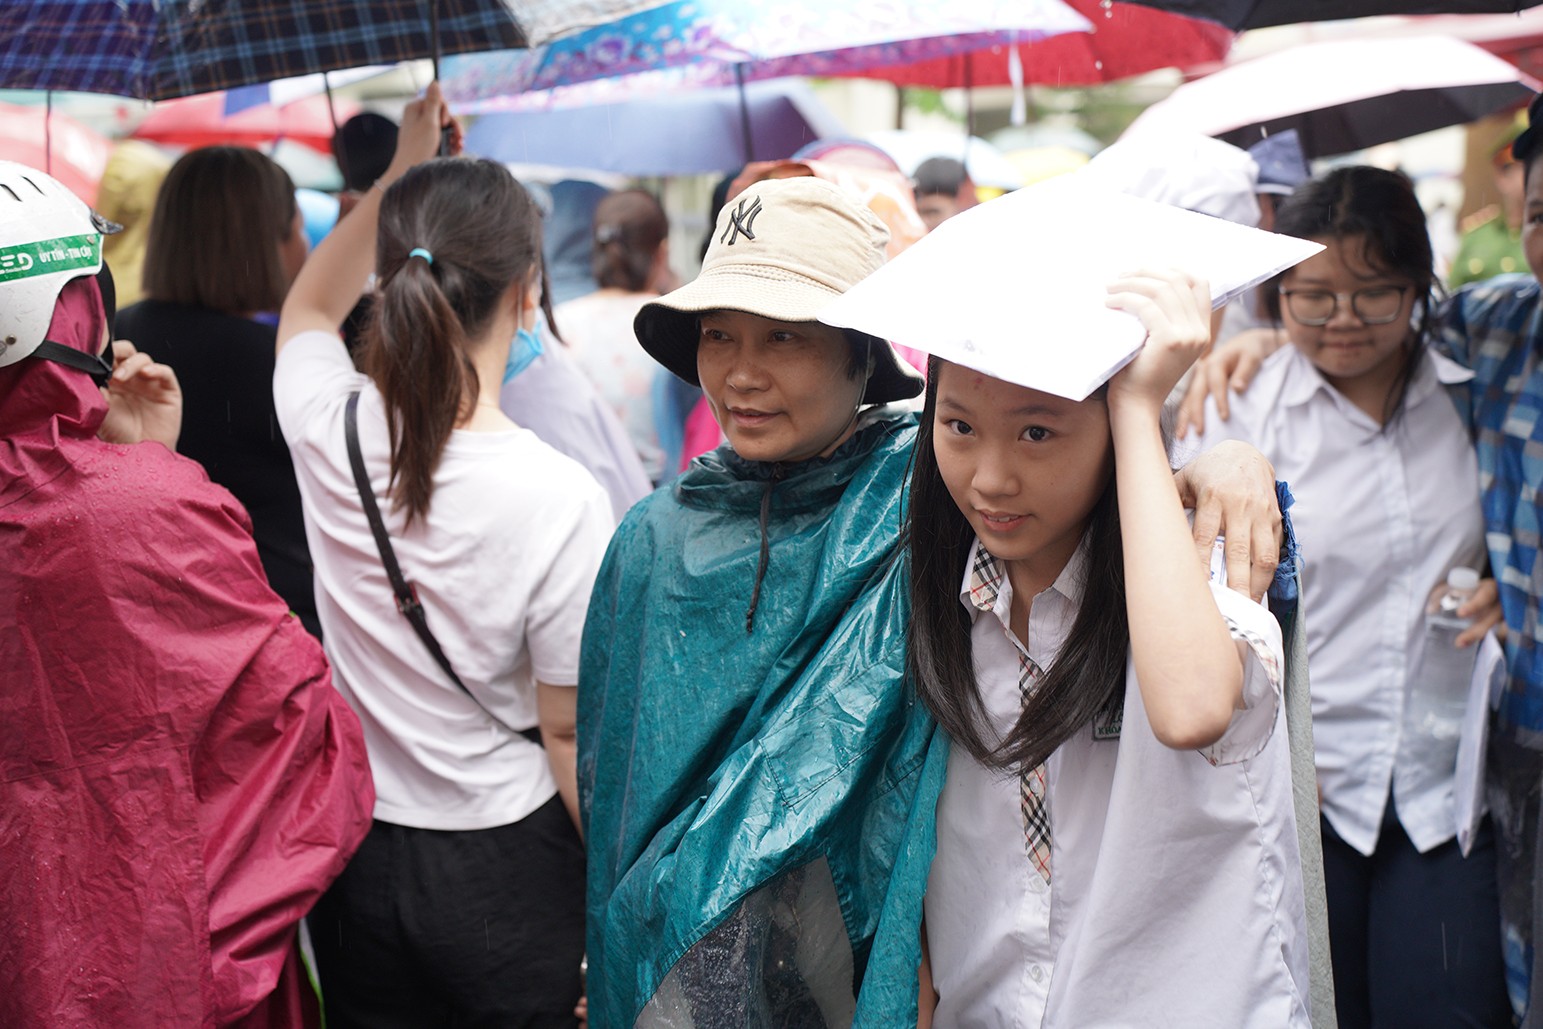 Cơn mưa tầm tã ngập đường xá tại Hà Nội khiến thí sinh sau khi kết thúc môn thi cuối cùng ra về trong vất vả.Cơn mưa tầm tã ngập đường xá tại TP.HCM khiến thí sinh sau khi kết thúc môn thi cuối cùng ra về trong vất vả.